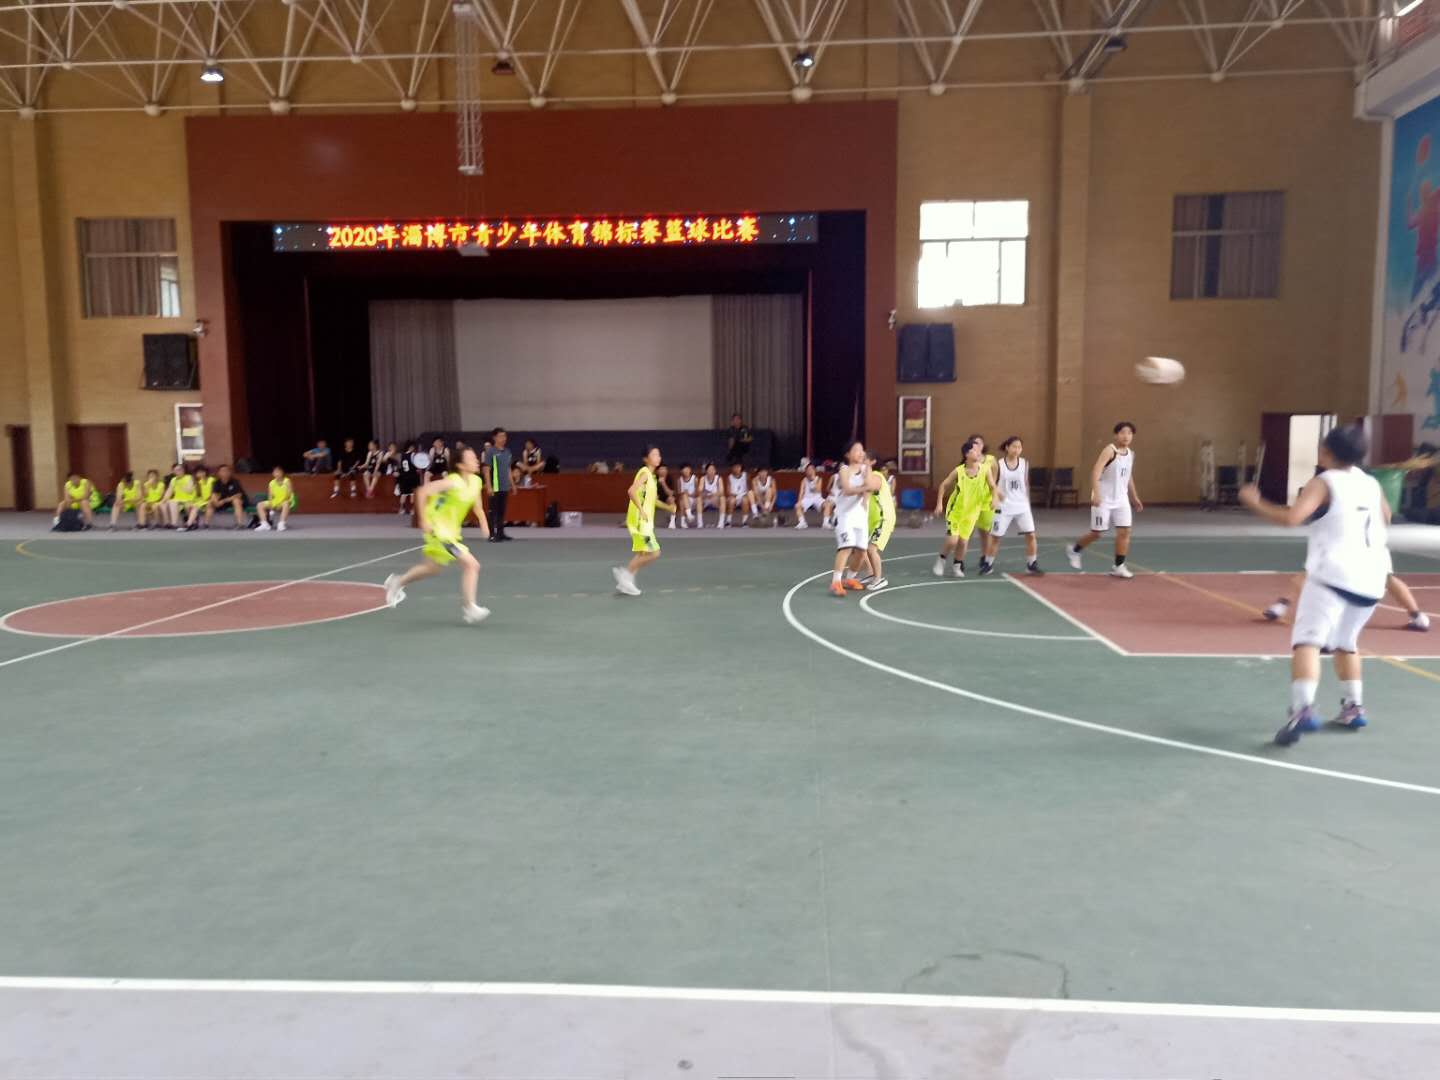 2020年淄博市青少年体育锦标赛篮球比赛顺利结束